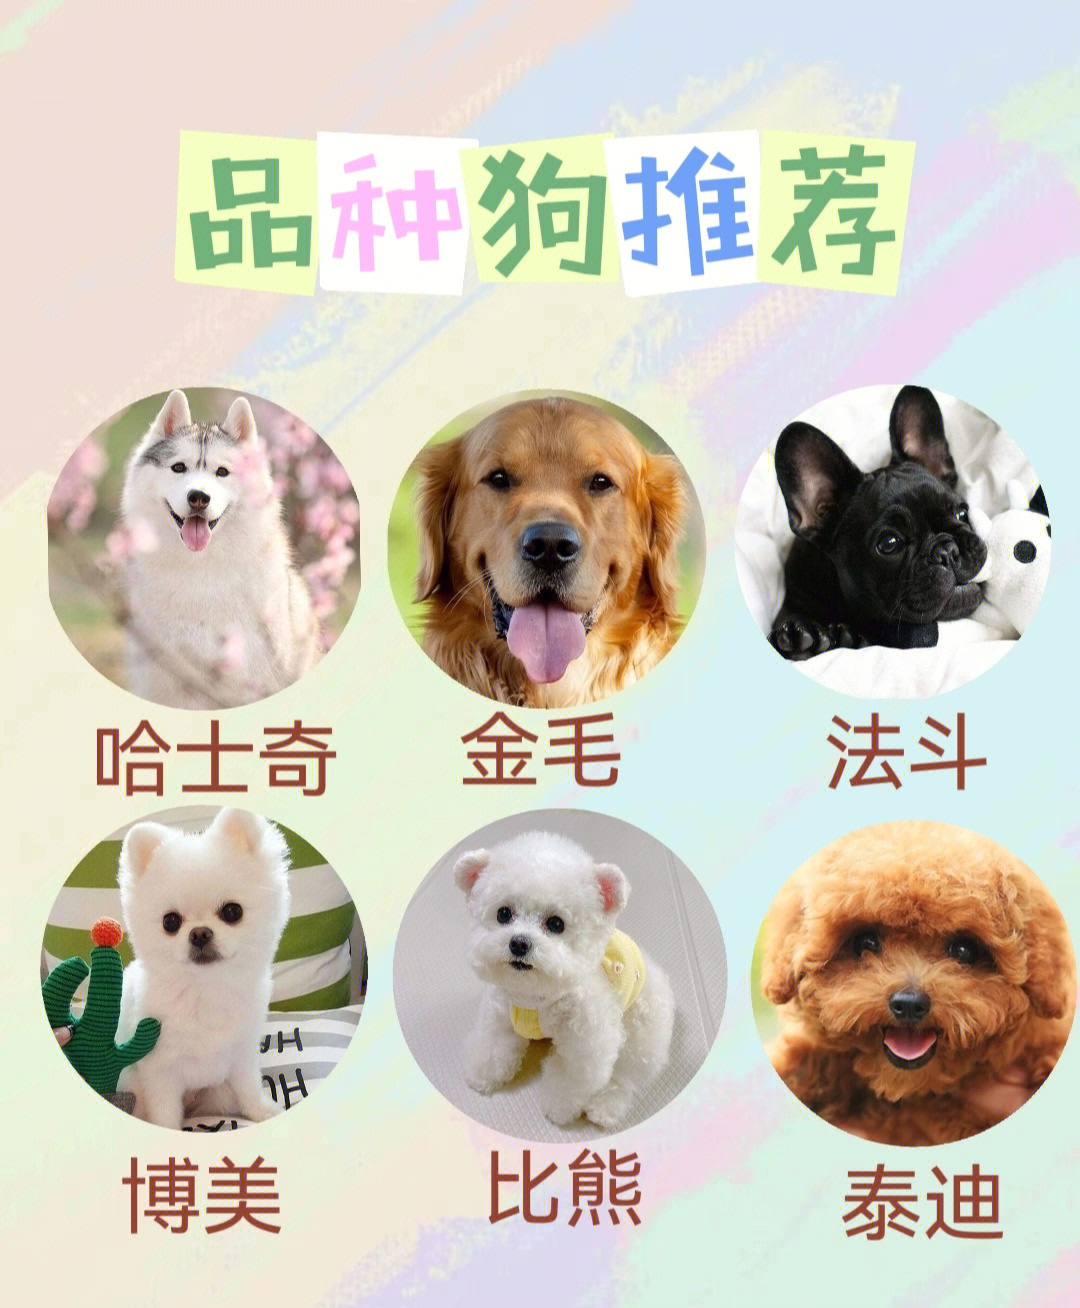 00品种】◆小型犬:比熊,泰迪,吉娃娃,西施犬,博美,柯基,哈巴狗,柴犬